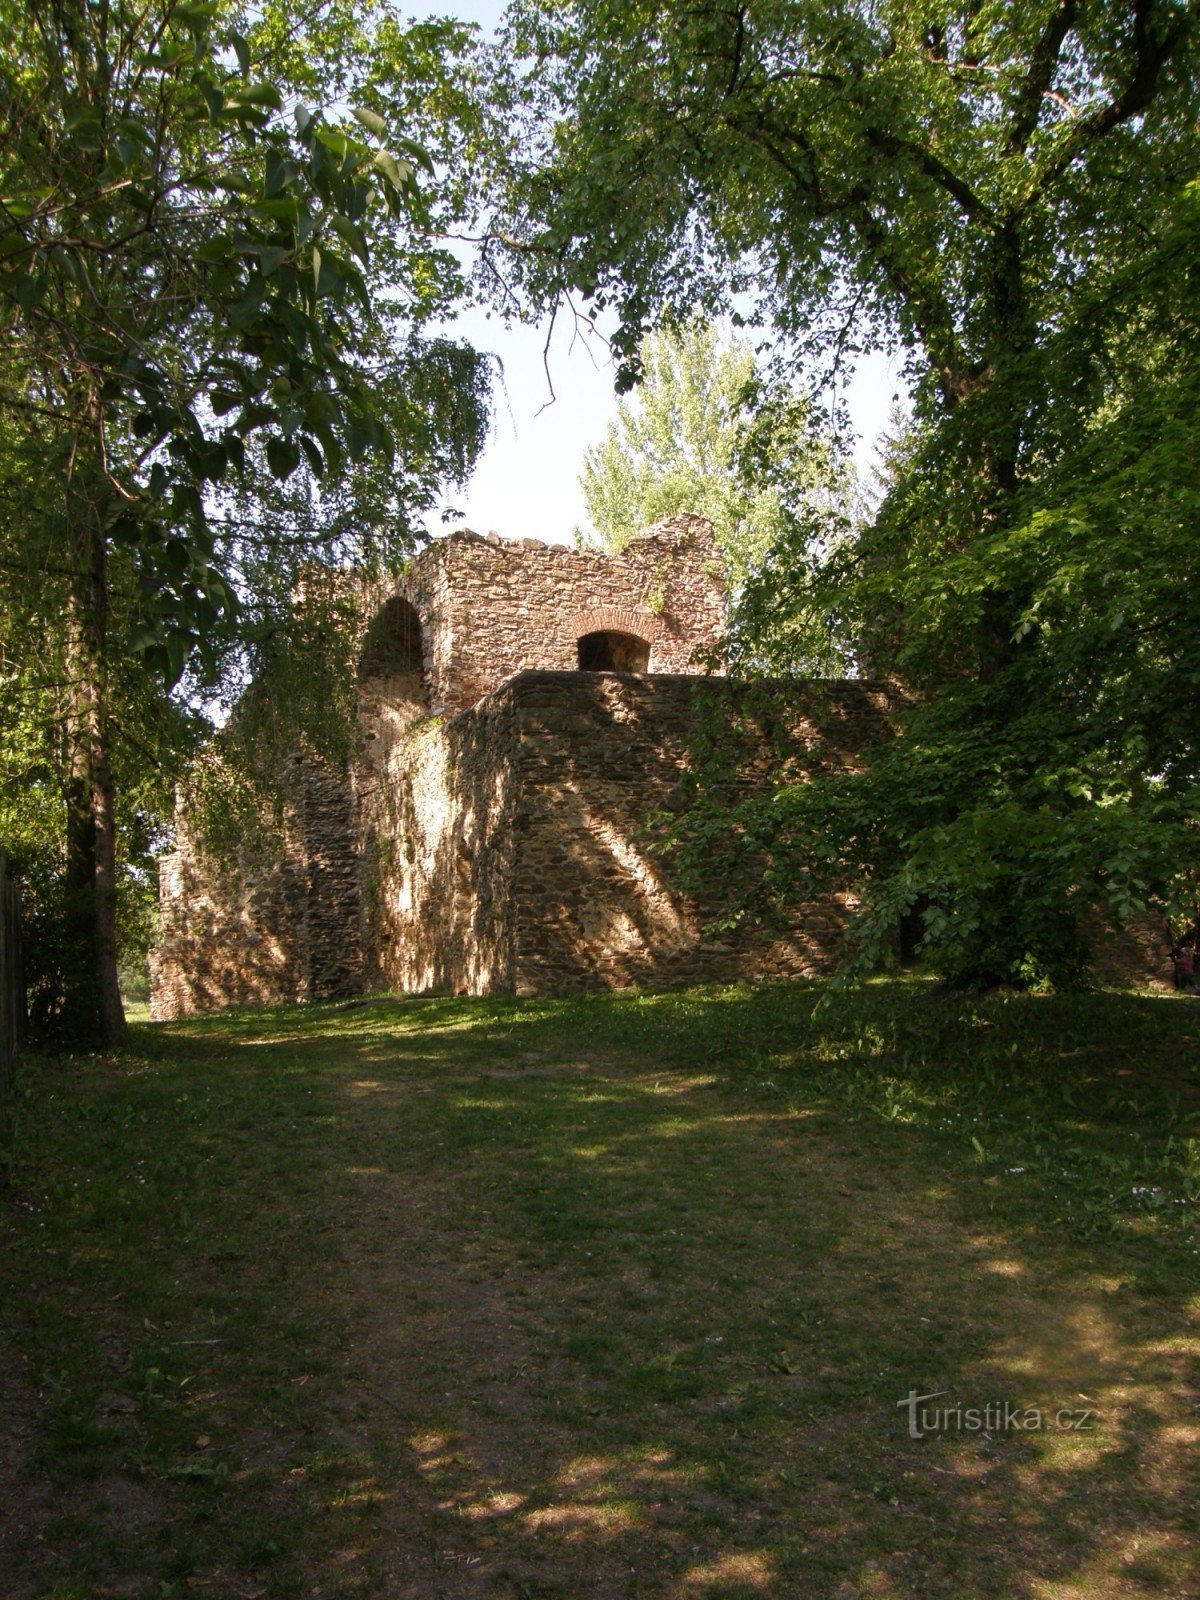 La fortaleza está a unos 70 m del centro del pueblo.